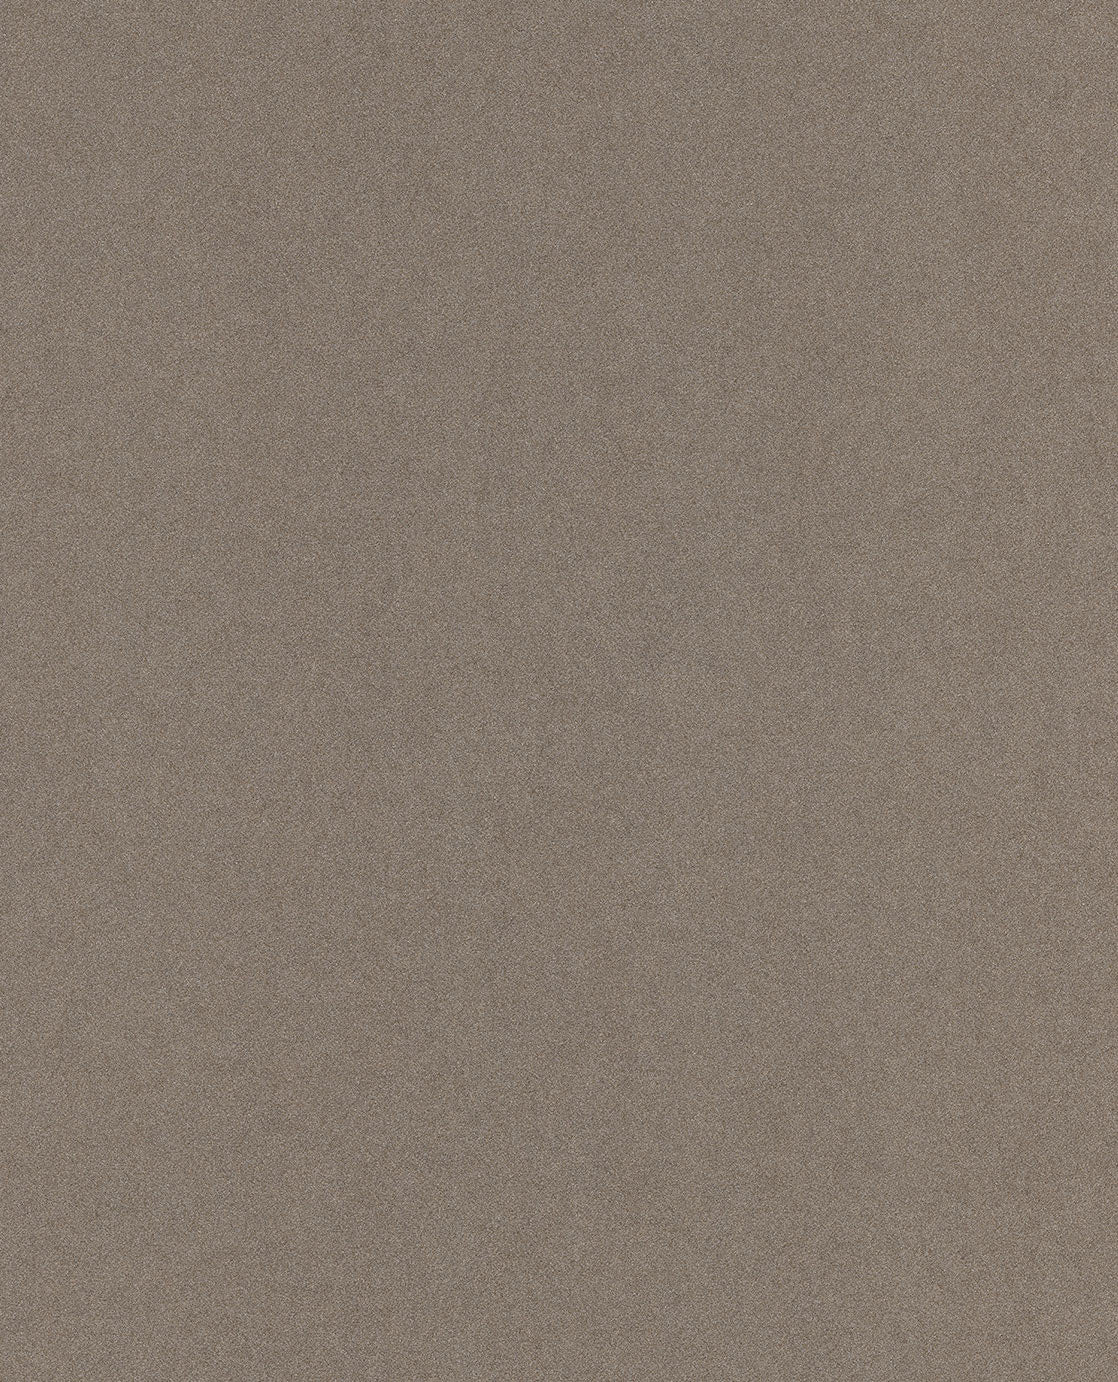 Enso Pearly Plain wallpaper